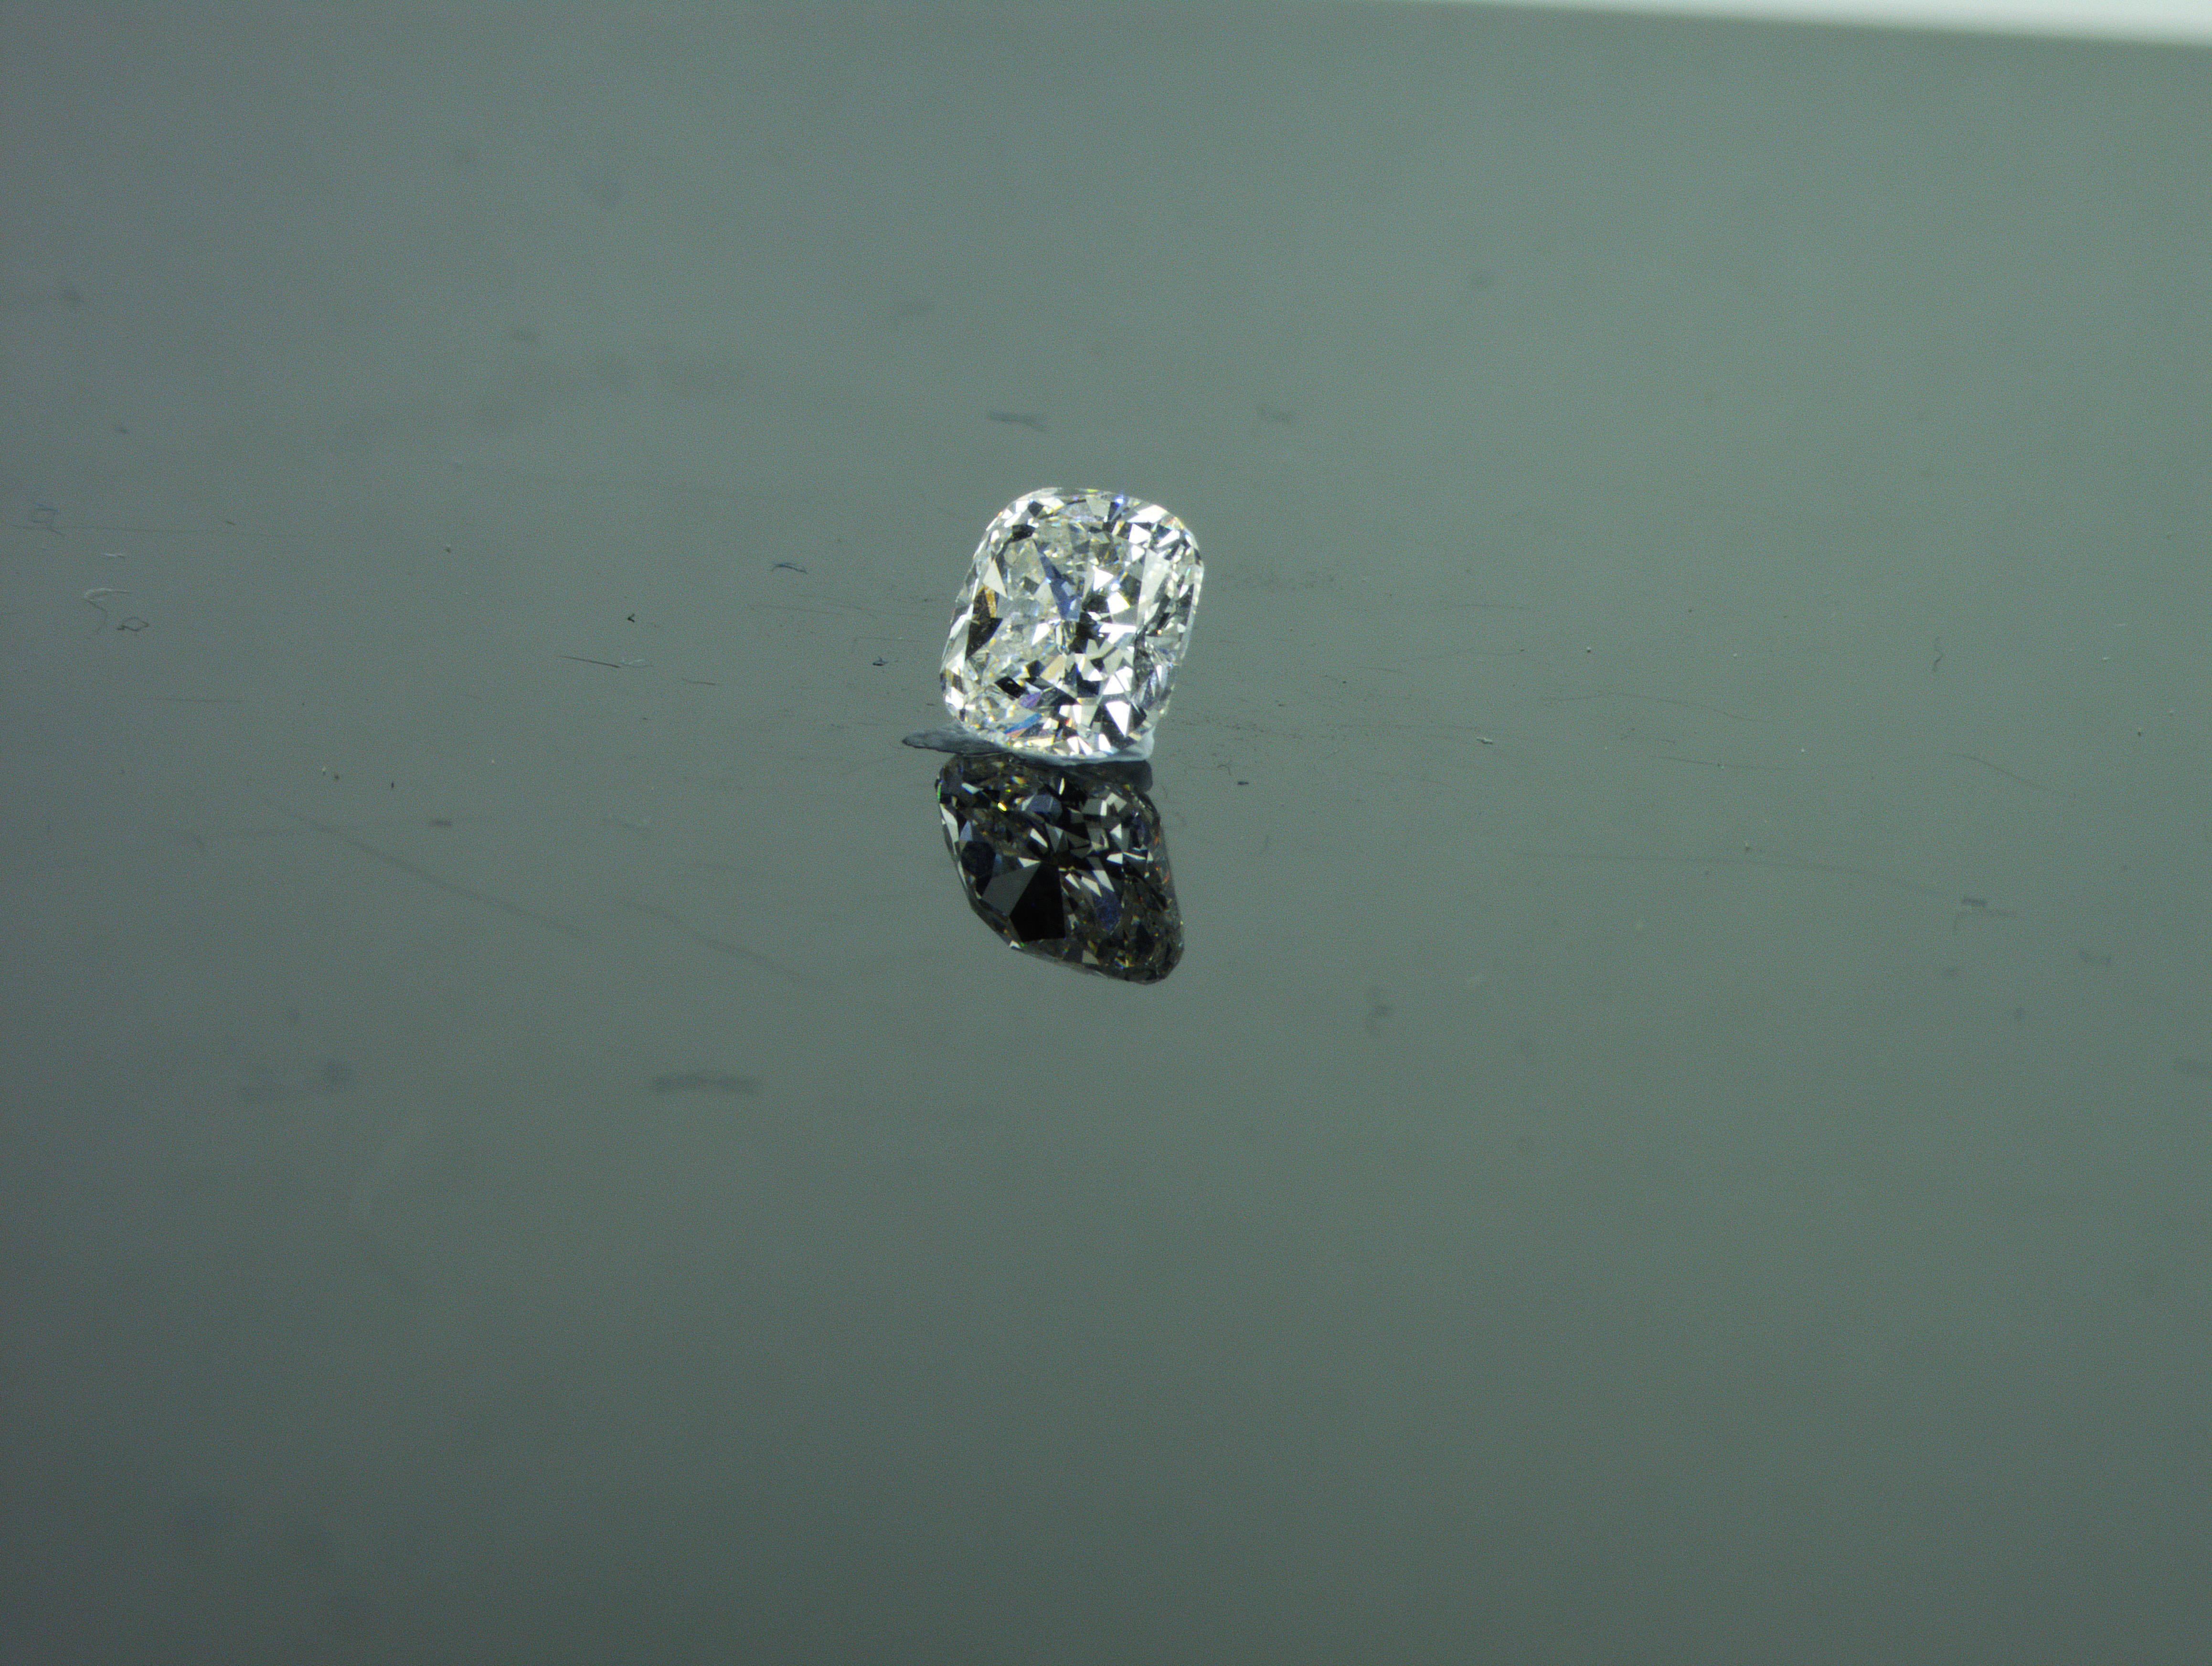 Nous sommes une société de production de diamants naturels située à Dubaï.
Poids : 1.01ct
Forme : Coussin
Couleur : blanc rare + (F)
Clarté : SI2
Polonais : Excellent
Symm : Bon
Dimensions (mm) : 5,90 x 5,83 x 3,66
Tous nos diamants avec